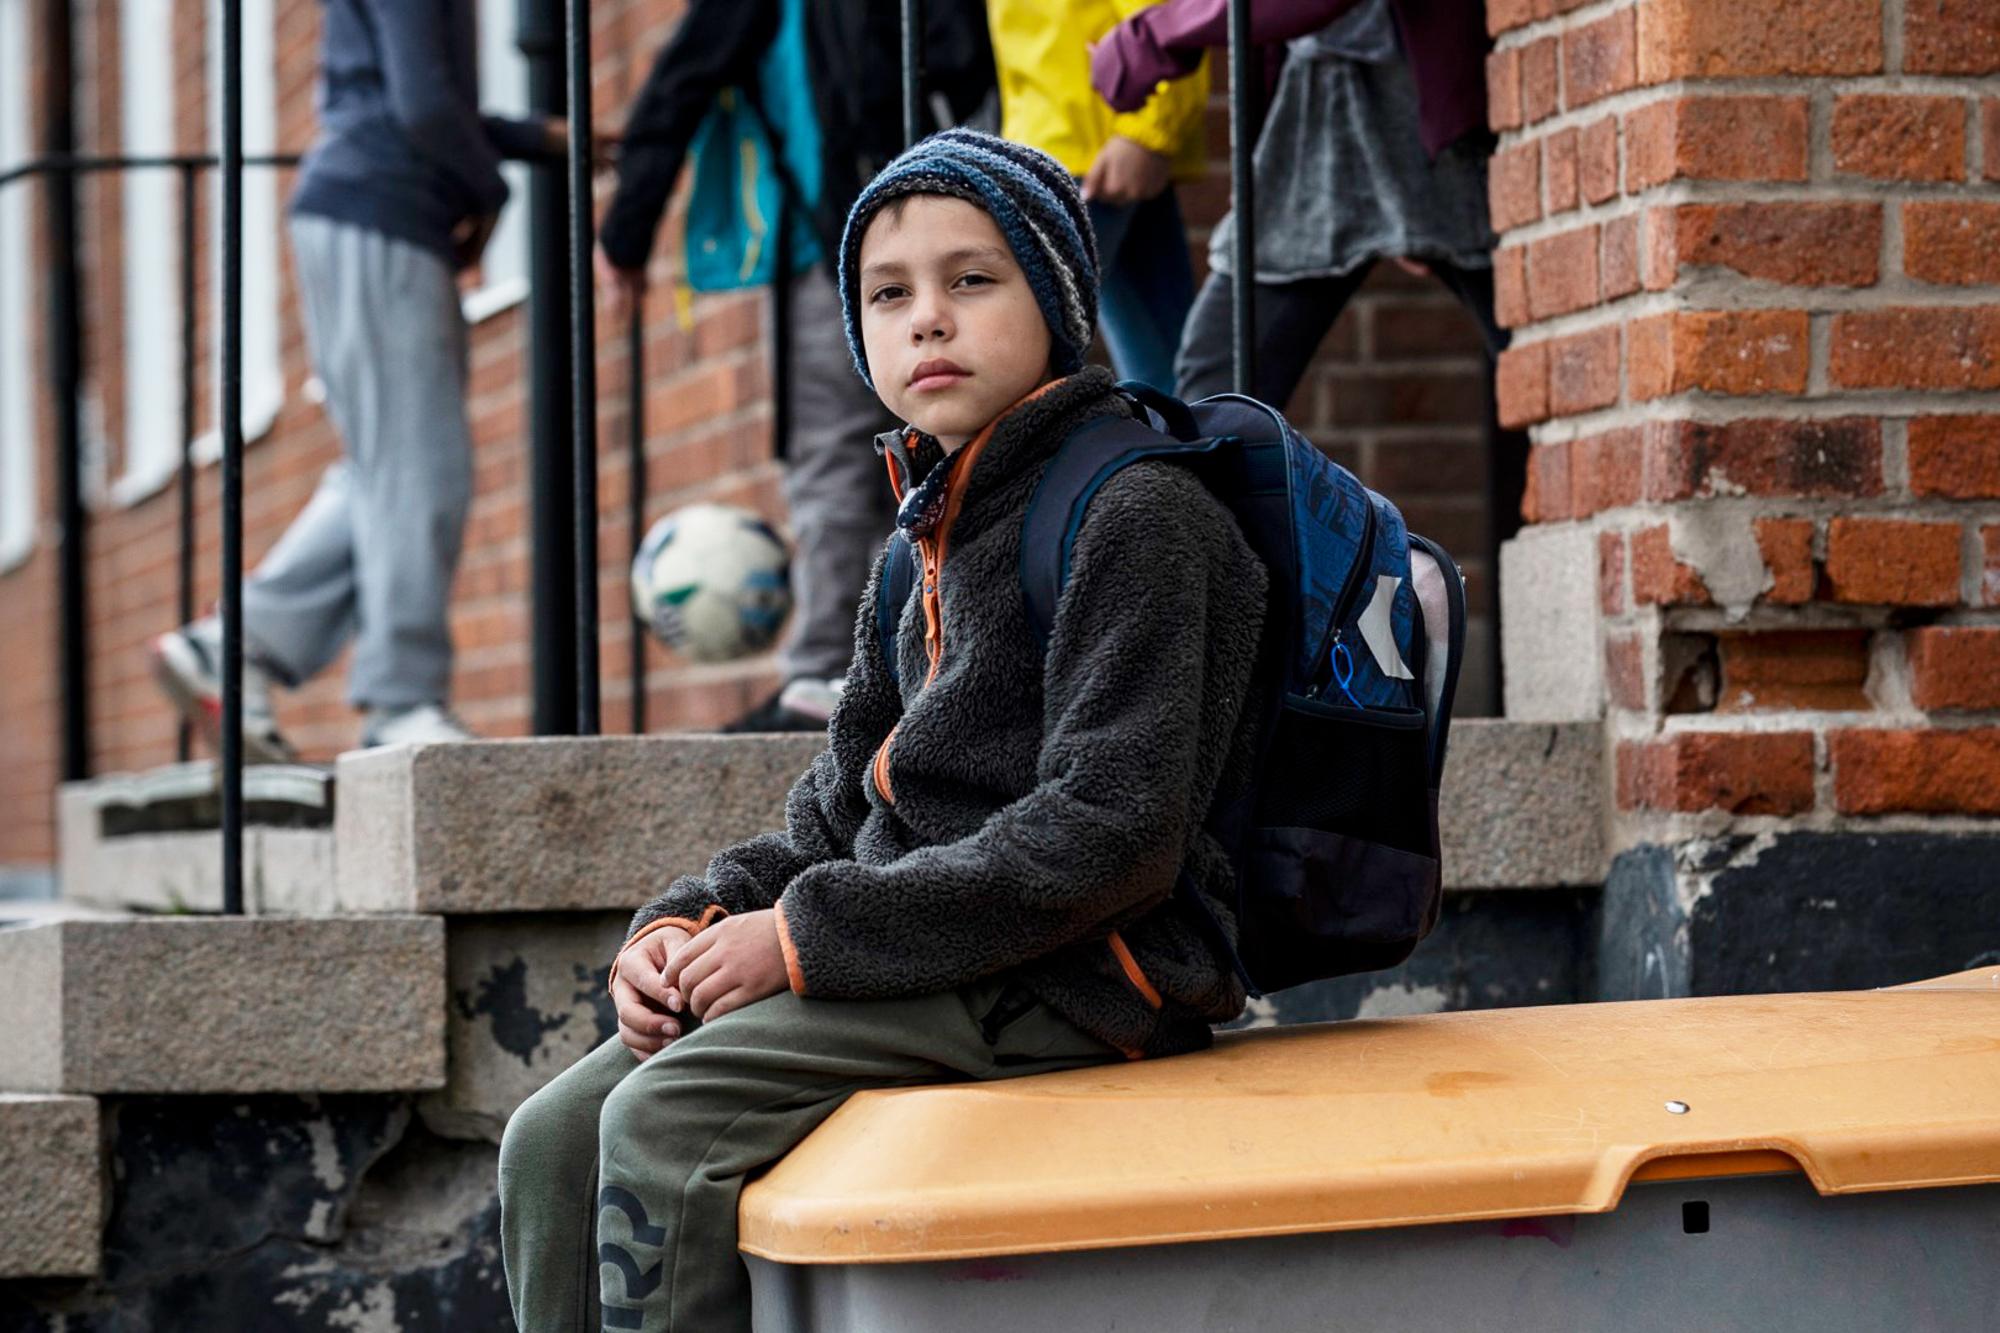 En pojke med ryggsäck sitter på en låda på en skolgård och ser uppgiven ut. Man ser andra barn i bakgrunden.